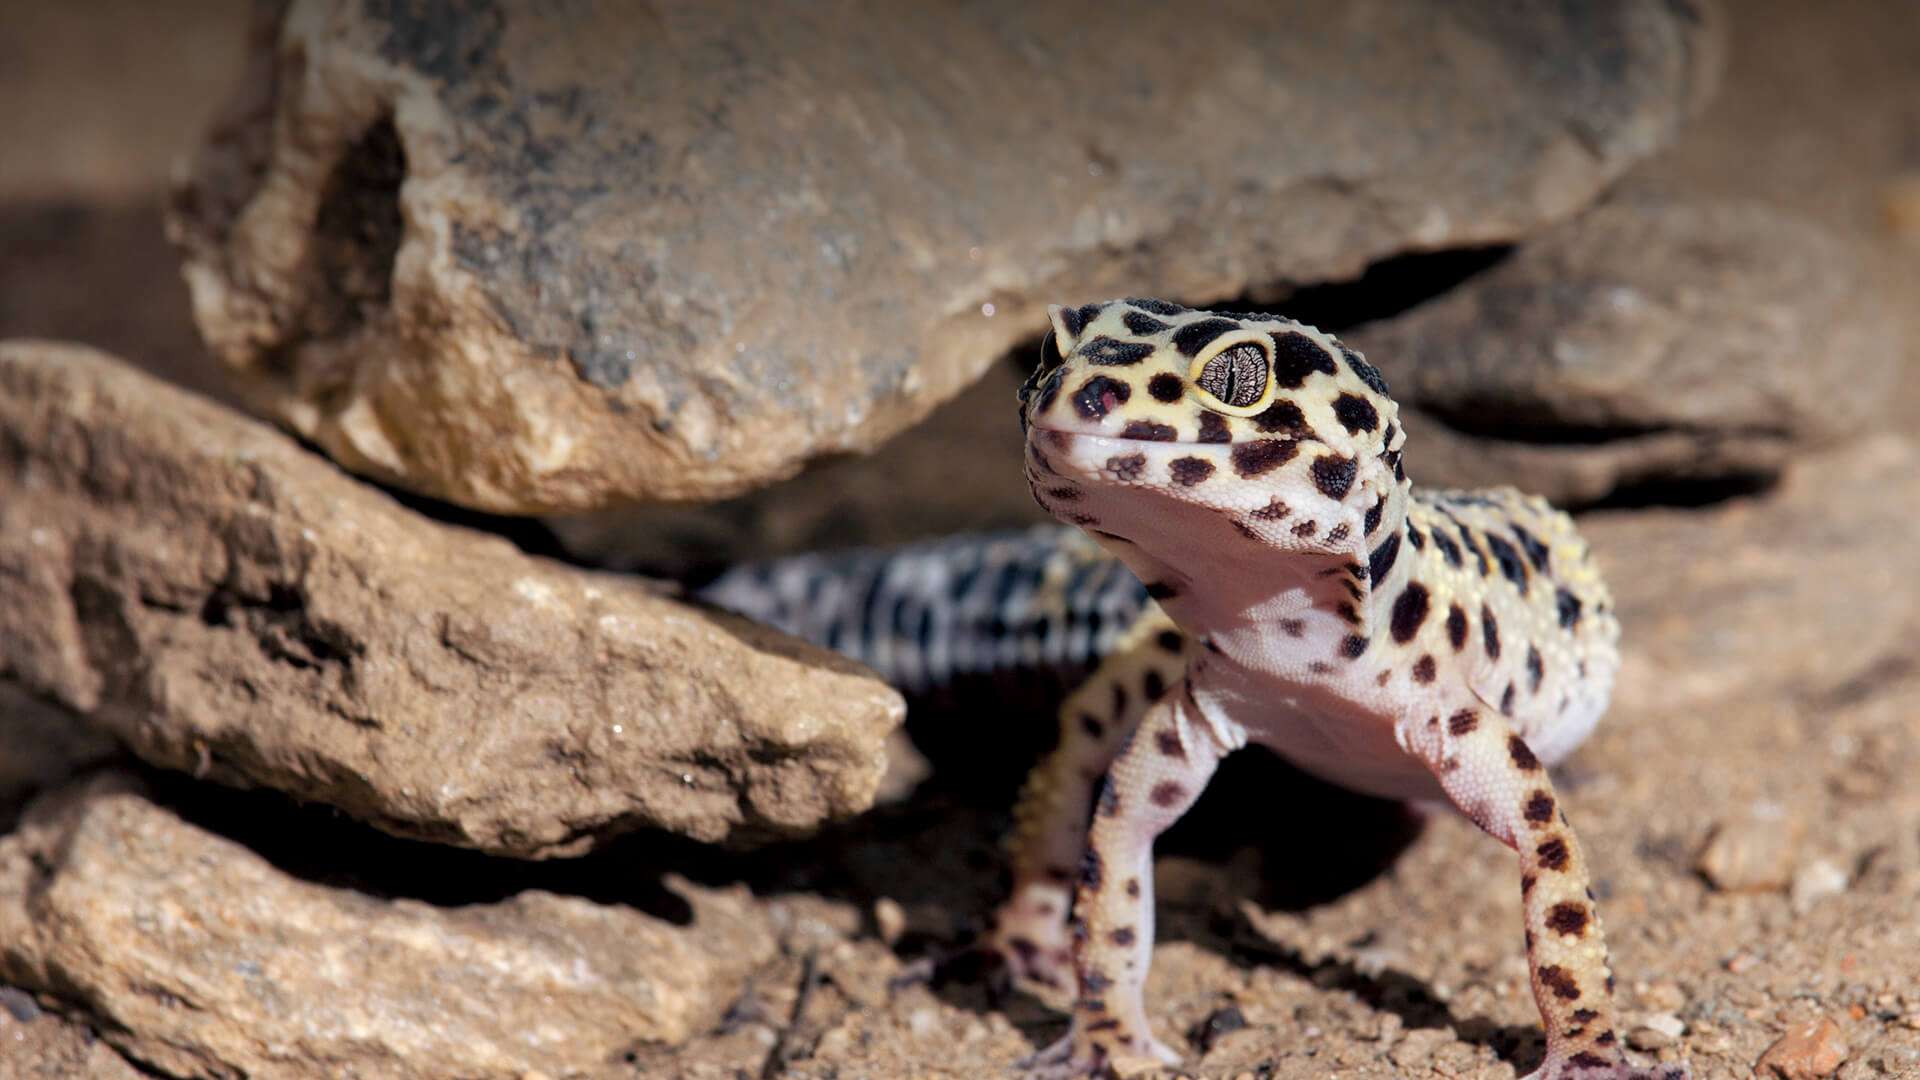 leopardgecko